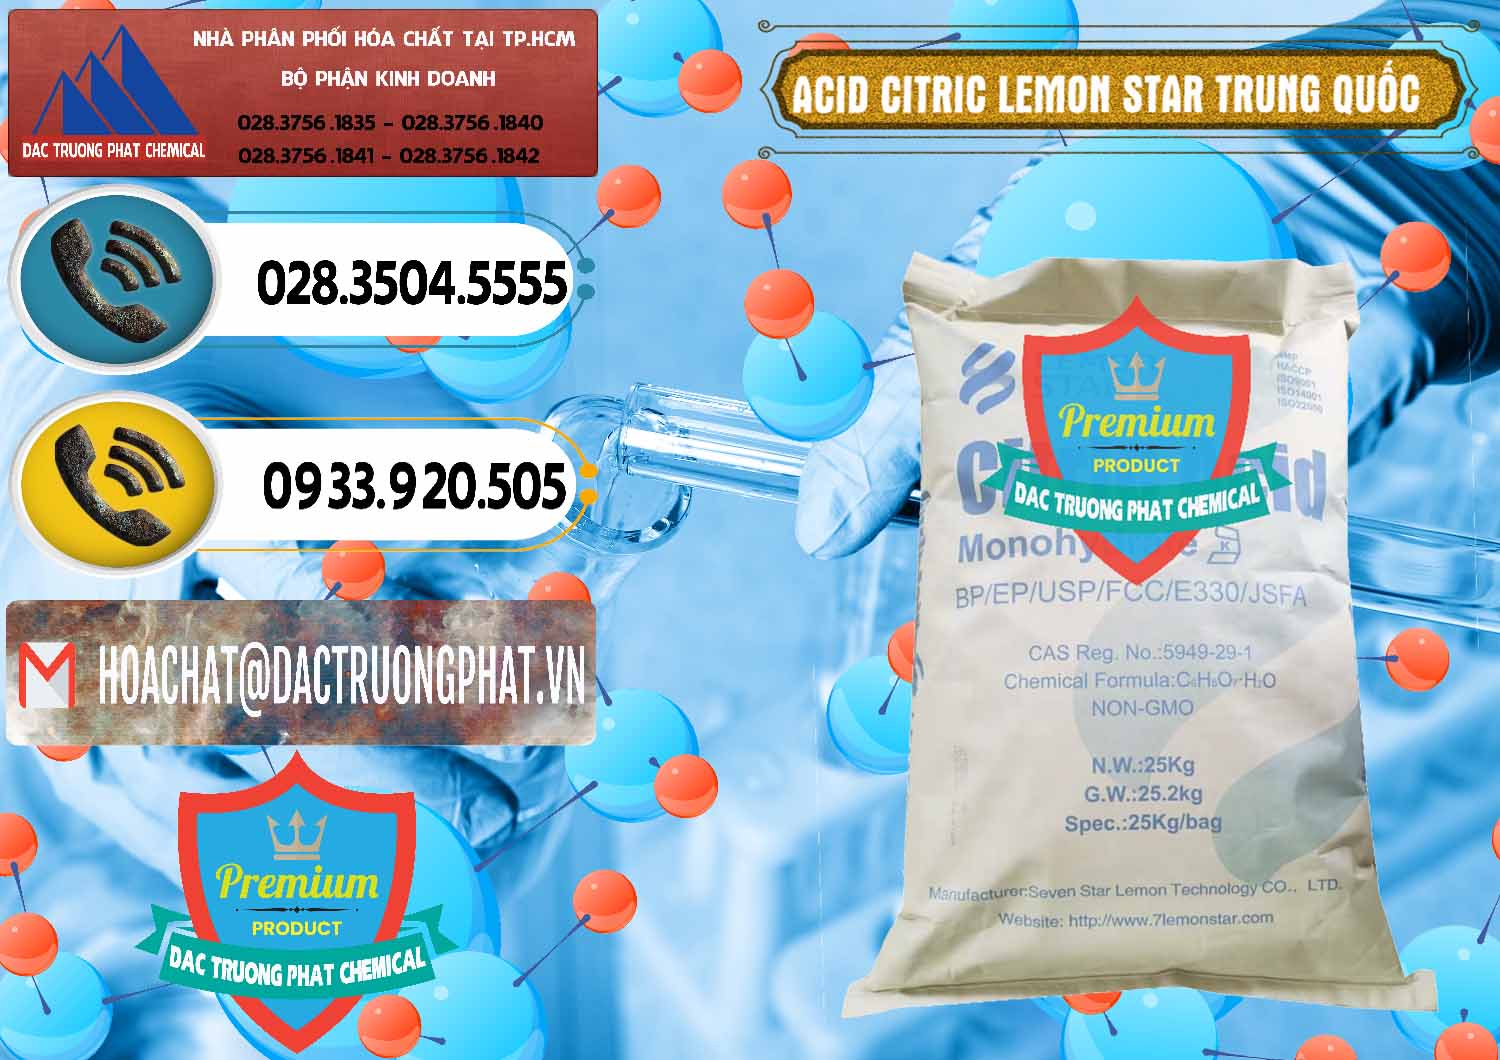 Chuyên bán và cung ứng Acid Citric - Axit Citric BP/EP/USP/FCC/E330 Lemon Star Trung Quốc China - 0286 - Đơn vị chuyên nhập khẩu và phân phối hóa chất tại TP.HCM - hoachatdetnhuom.vn